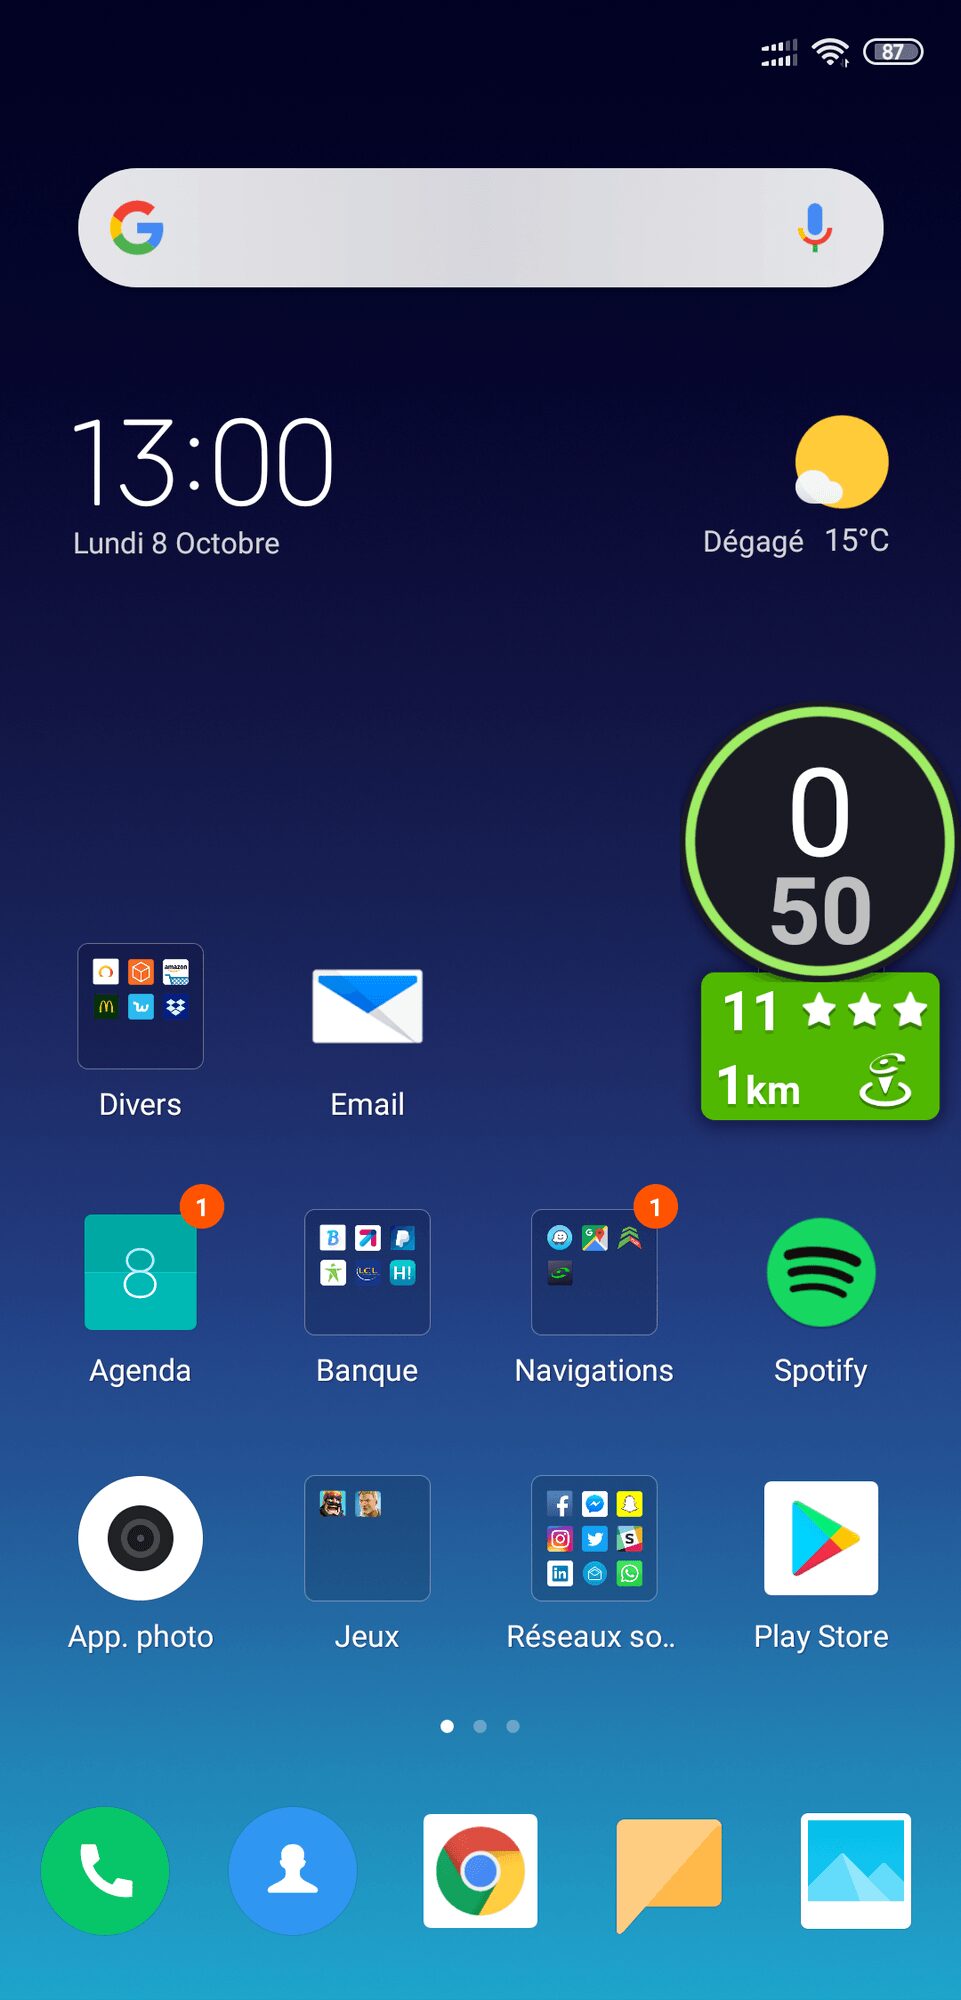 Coyote Screenshot 2018 10 08 13 00 52 513 com miui home L’application Coyote – Un indispensable de la navigation Android